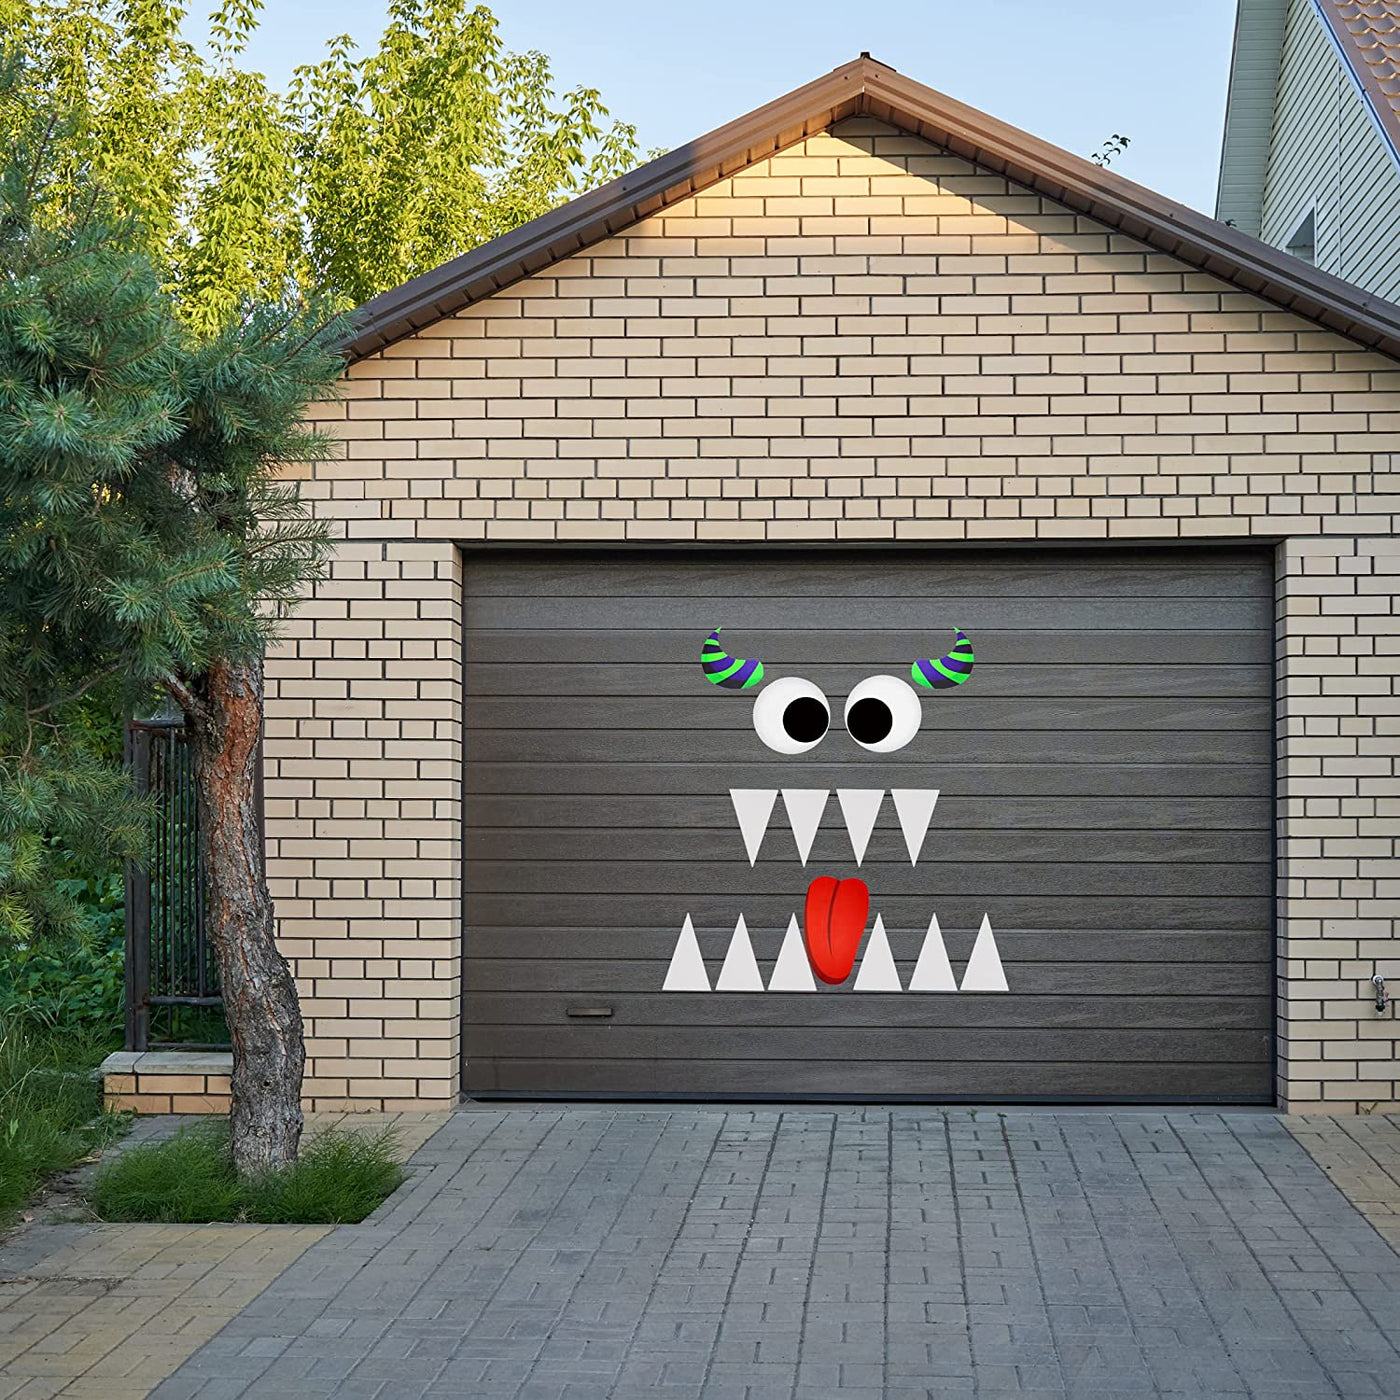 4E's Novelty Monster Trunk or Treat Car Decoration Kit - Cute Monster Face Trunk or Treat Kit for Car & SUV, Outdoor Halloween Garage Door Decorations